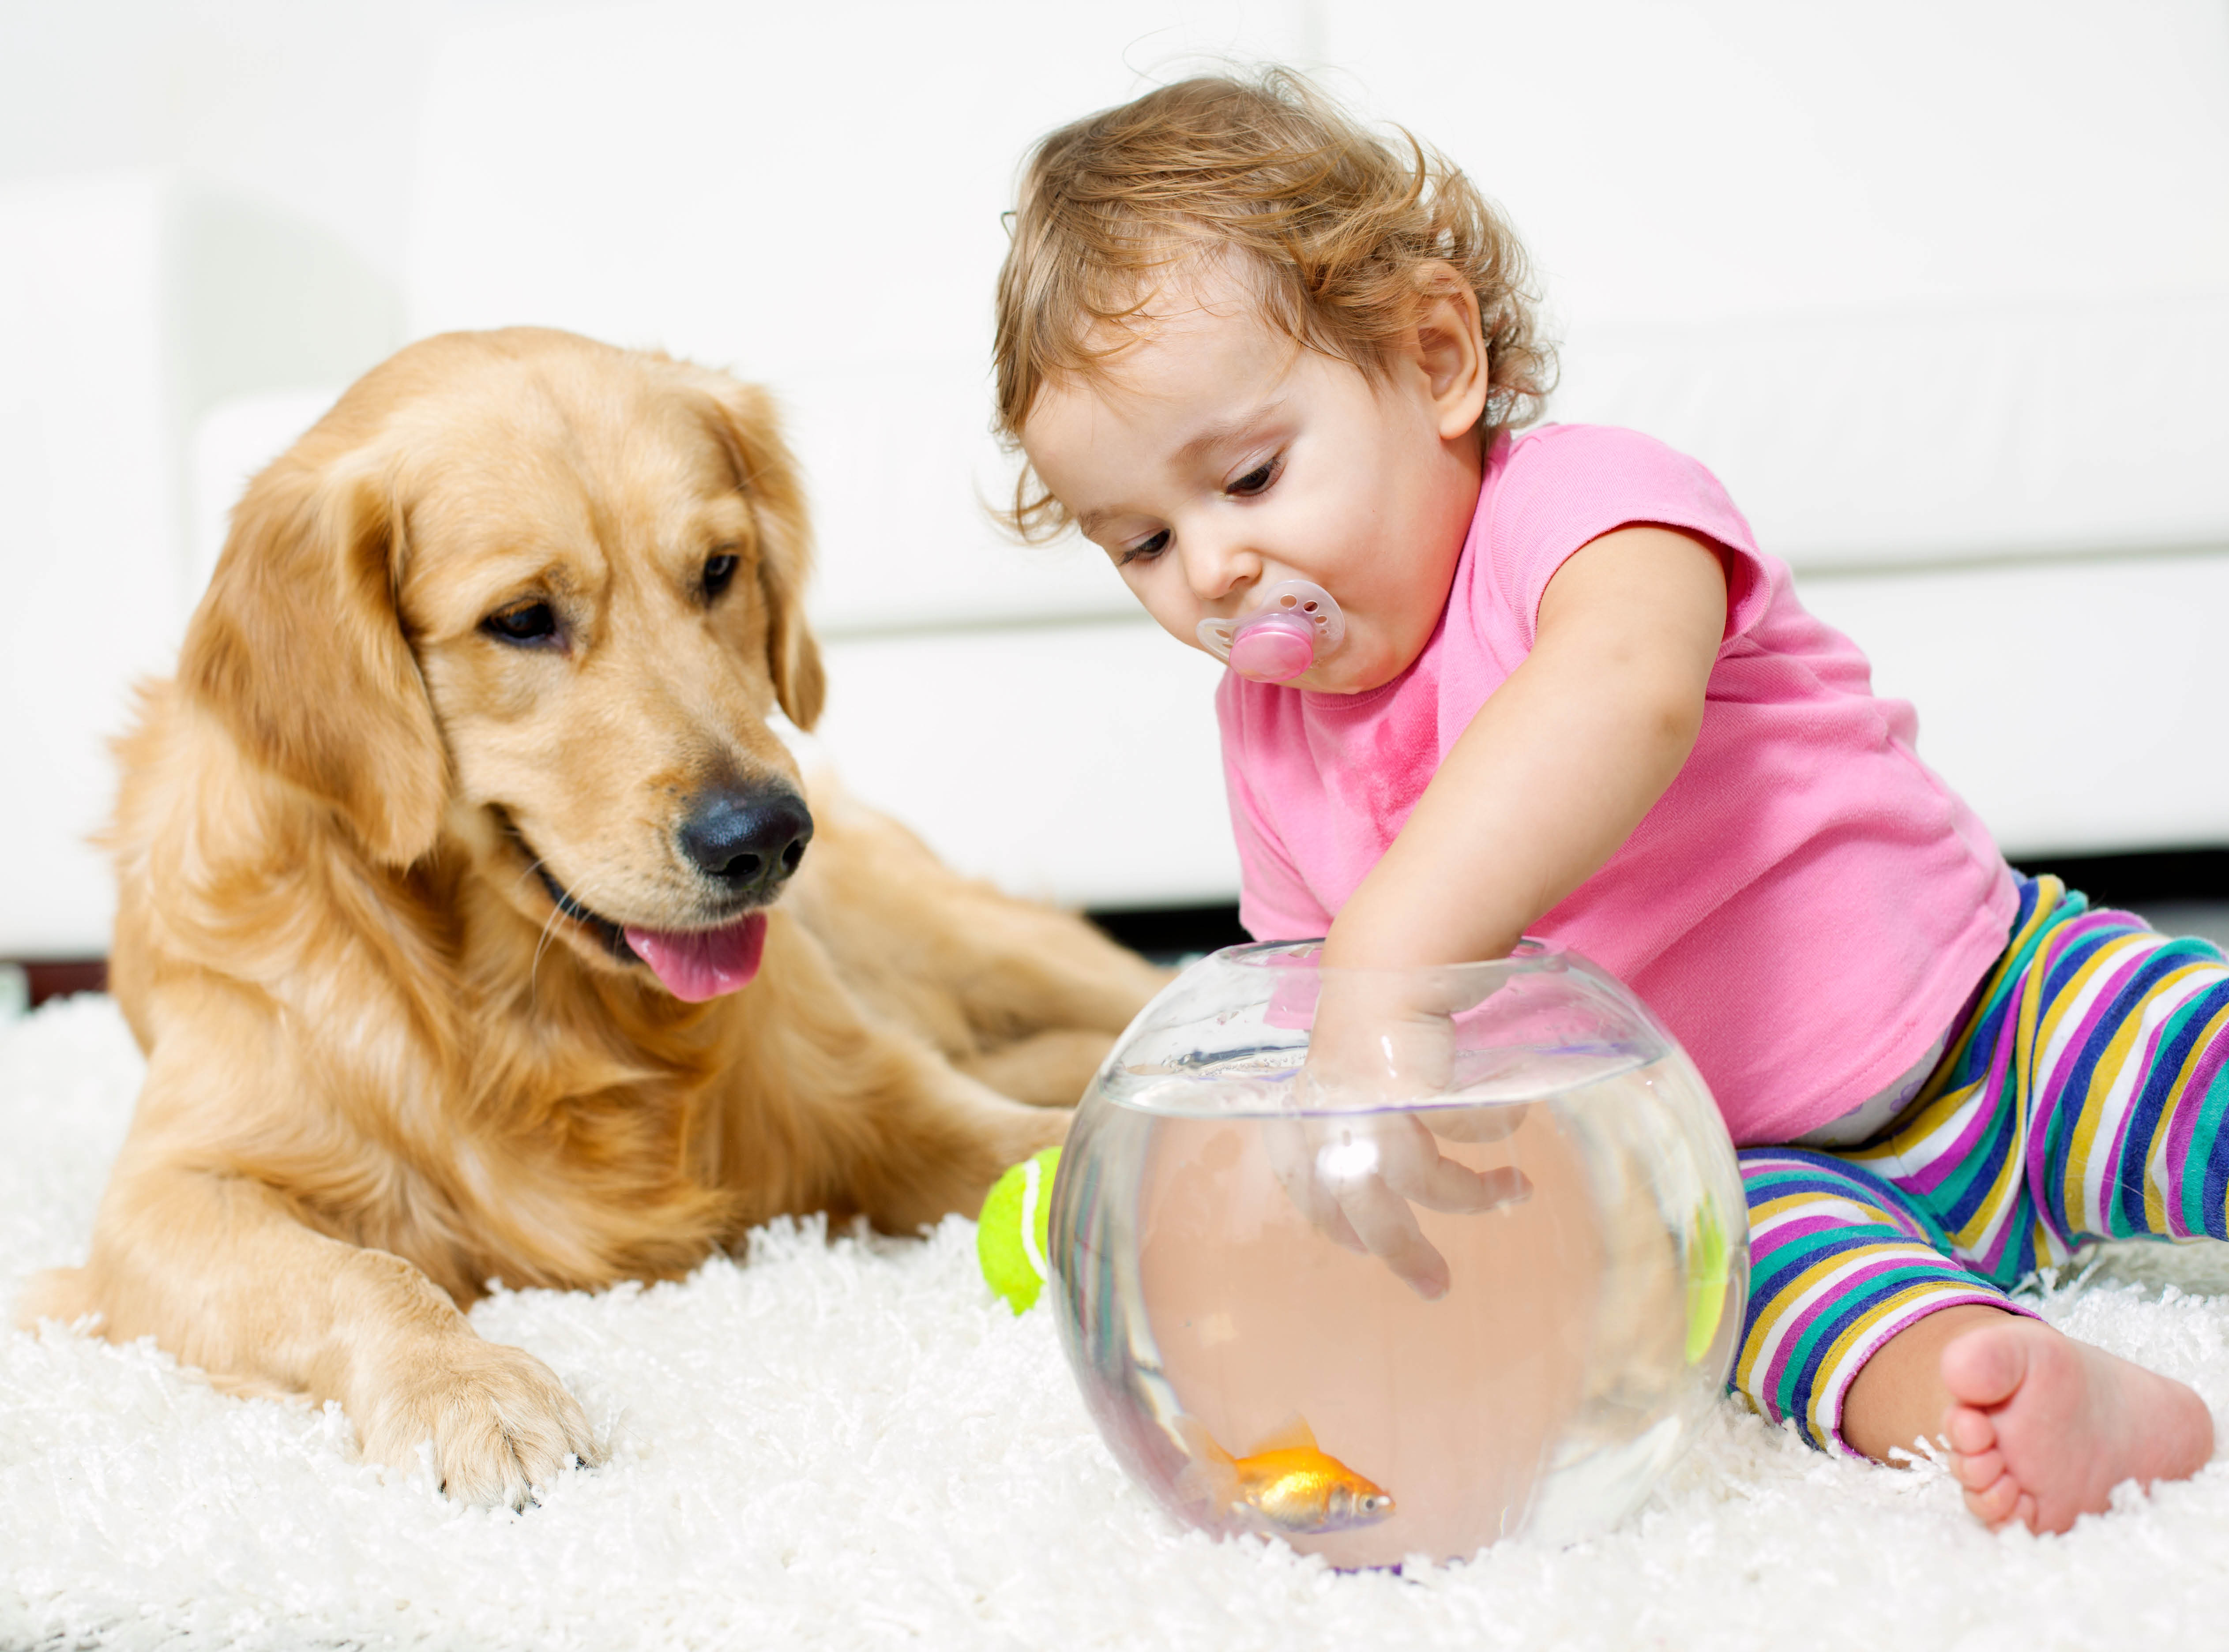 Give a talk about pets. Домашние питомцы. Собака для детей. Дружелюбный питомец. Здоровый питомец.